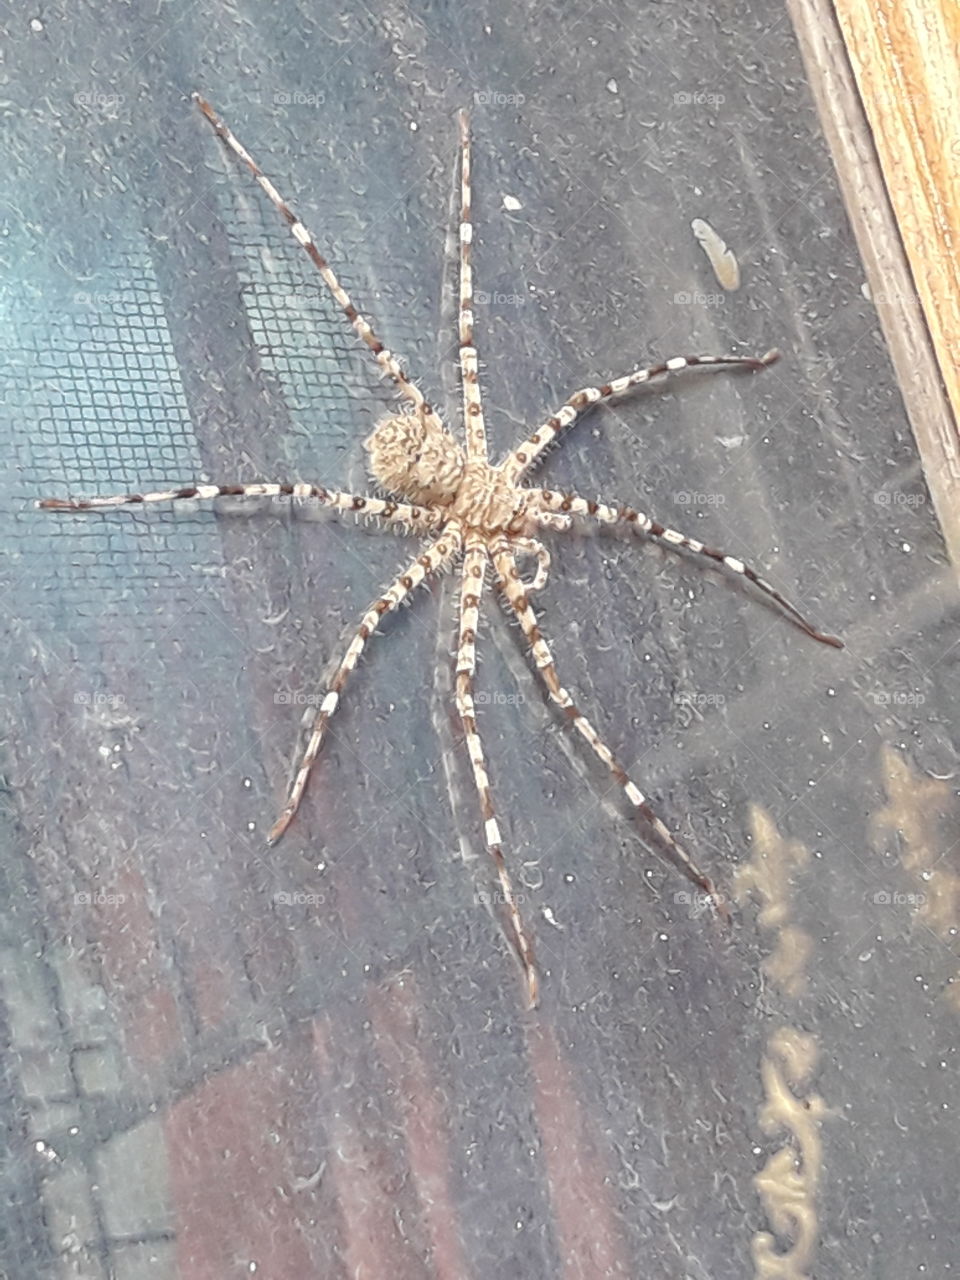 spider big